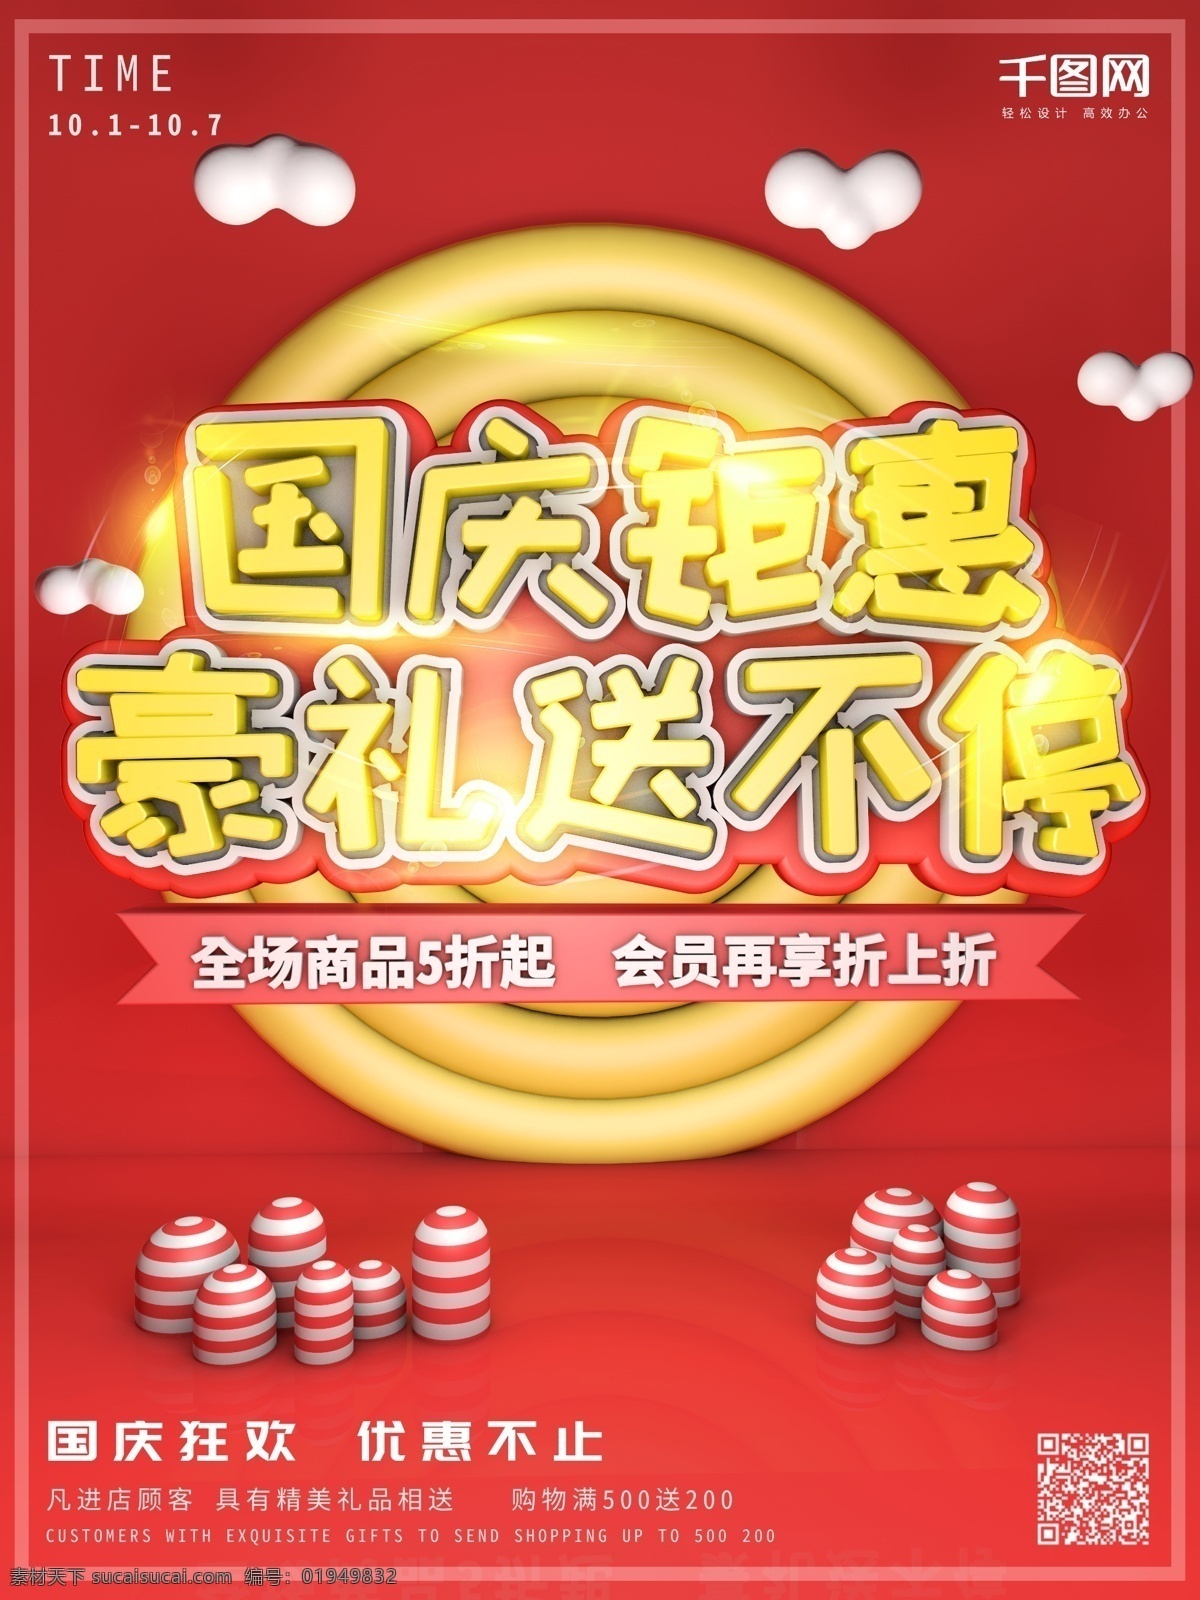 c4d 红色 国庆 钜 惠 宣传海报 促销 宣传 打折 云 模型 10.1 十月一 豪礼